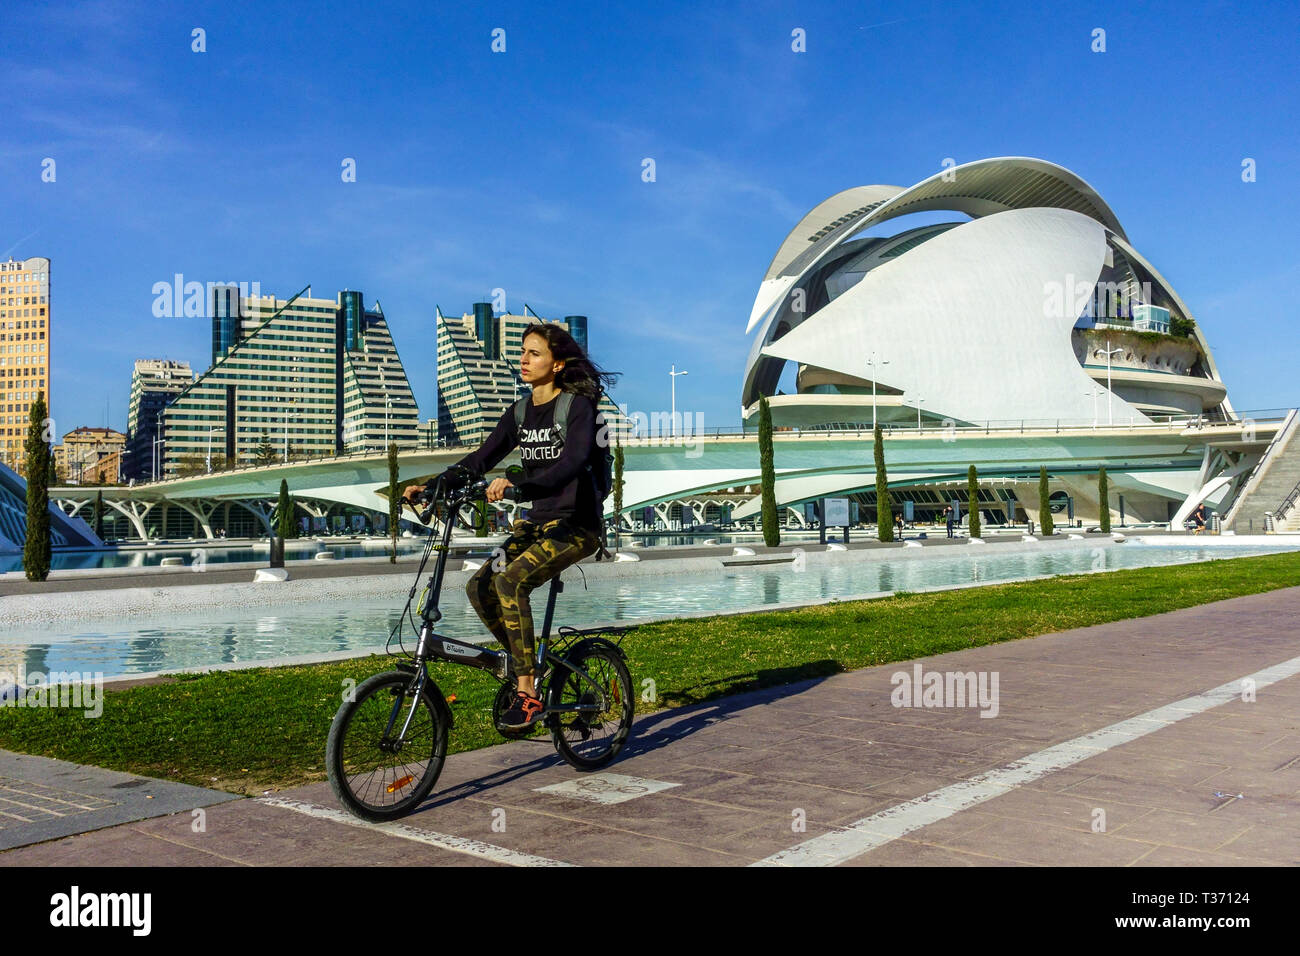 Valencia Stadt der Wissenschaft, Frau auf einem Fahrrad, Turia Park, Spanien Fahrradstadt Hispanic Teen Ride Bike Stockfoto